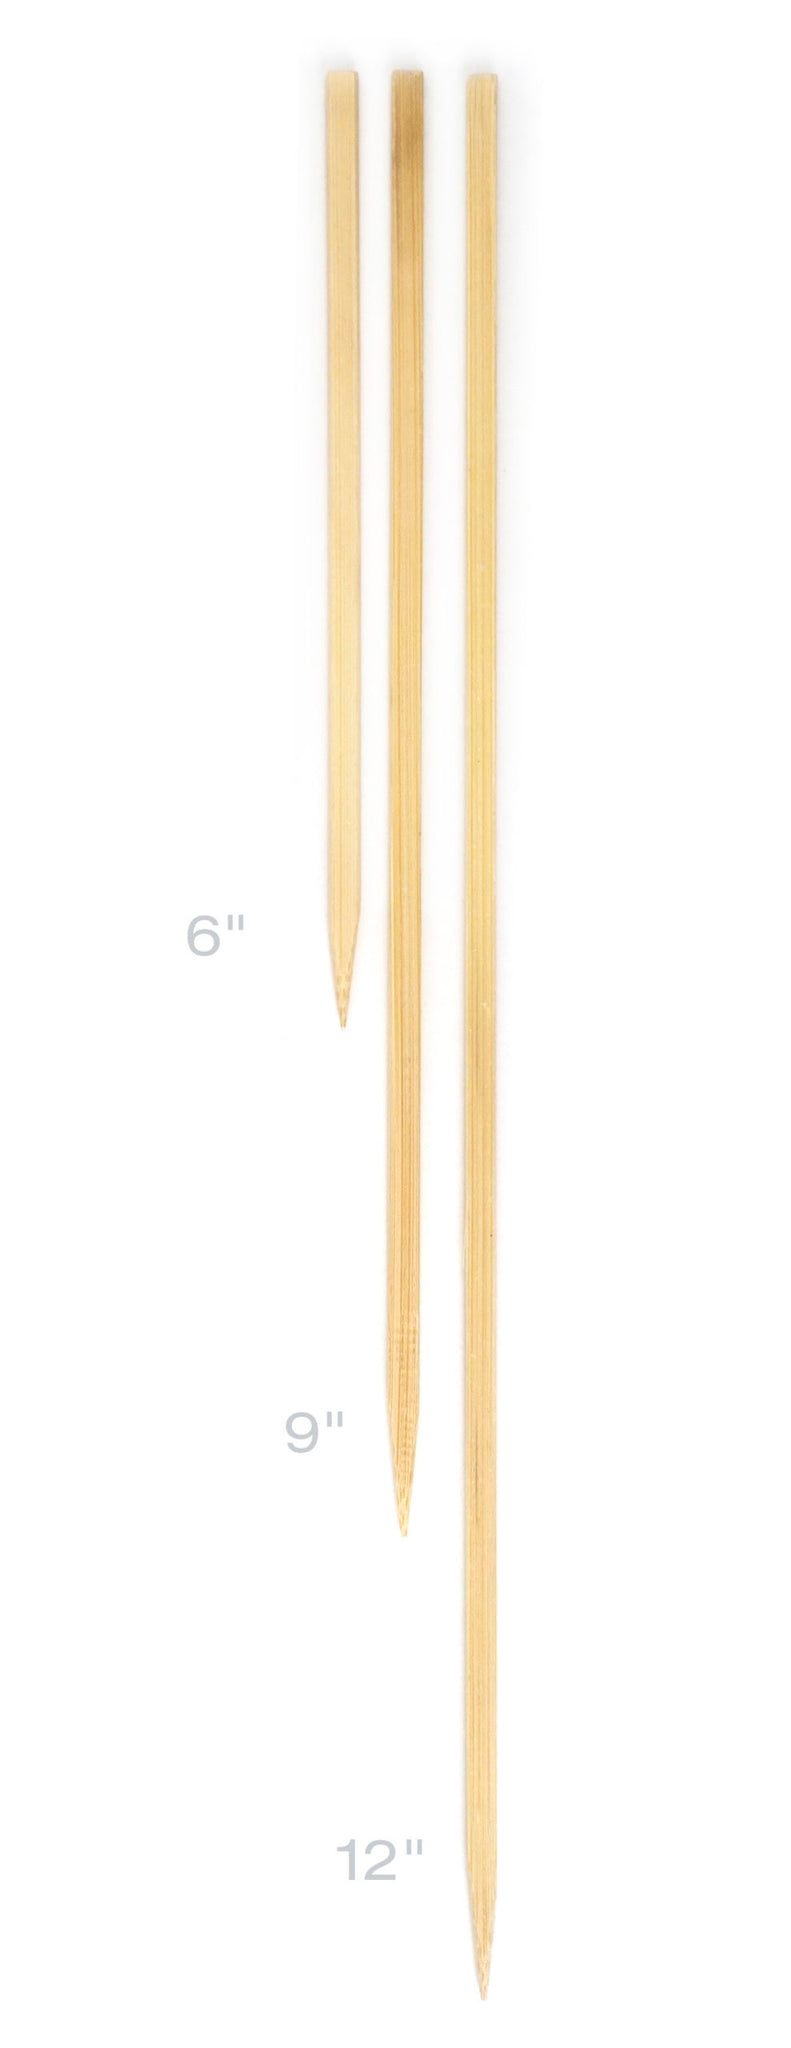 Bamboo Skewers - 6"